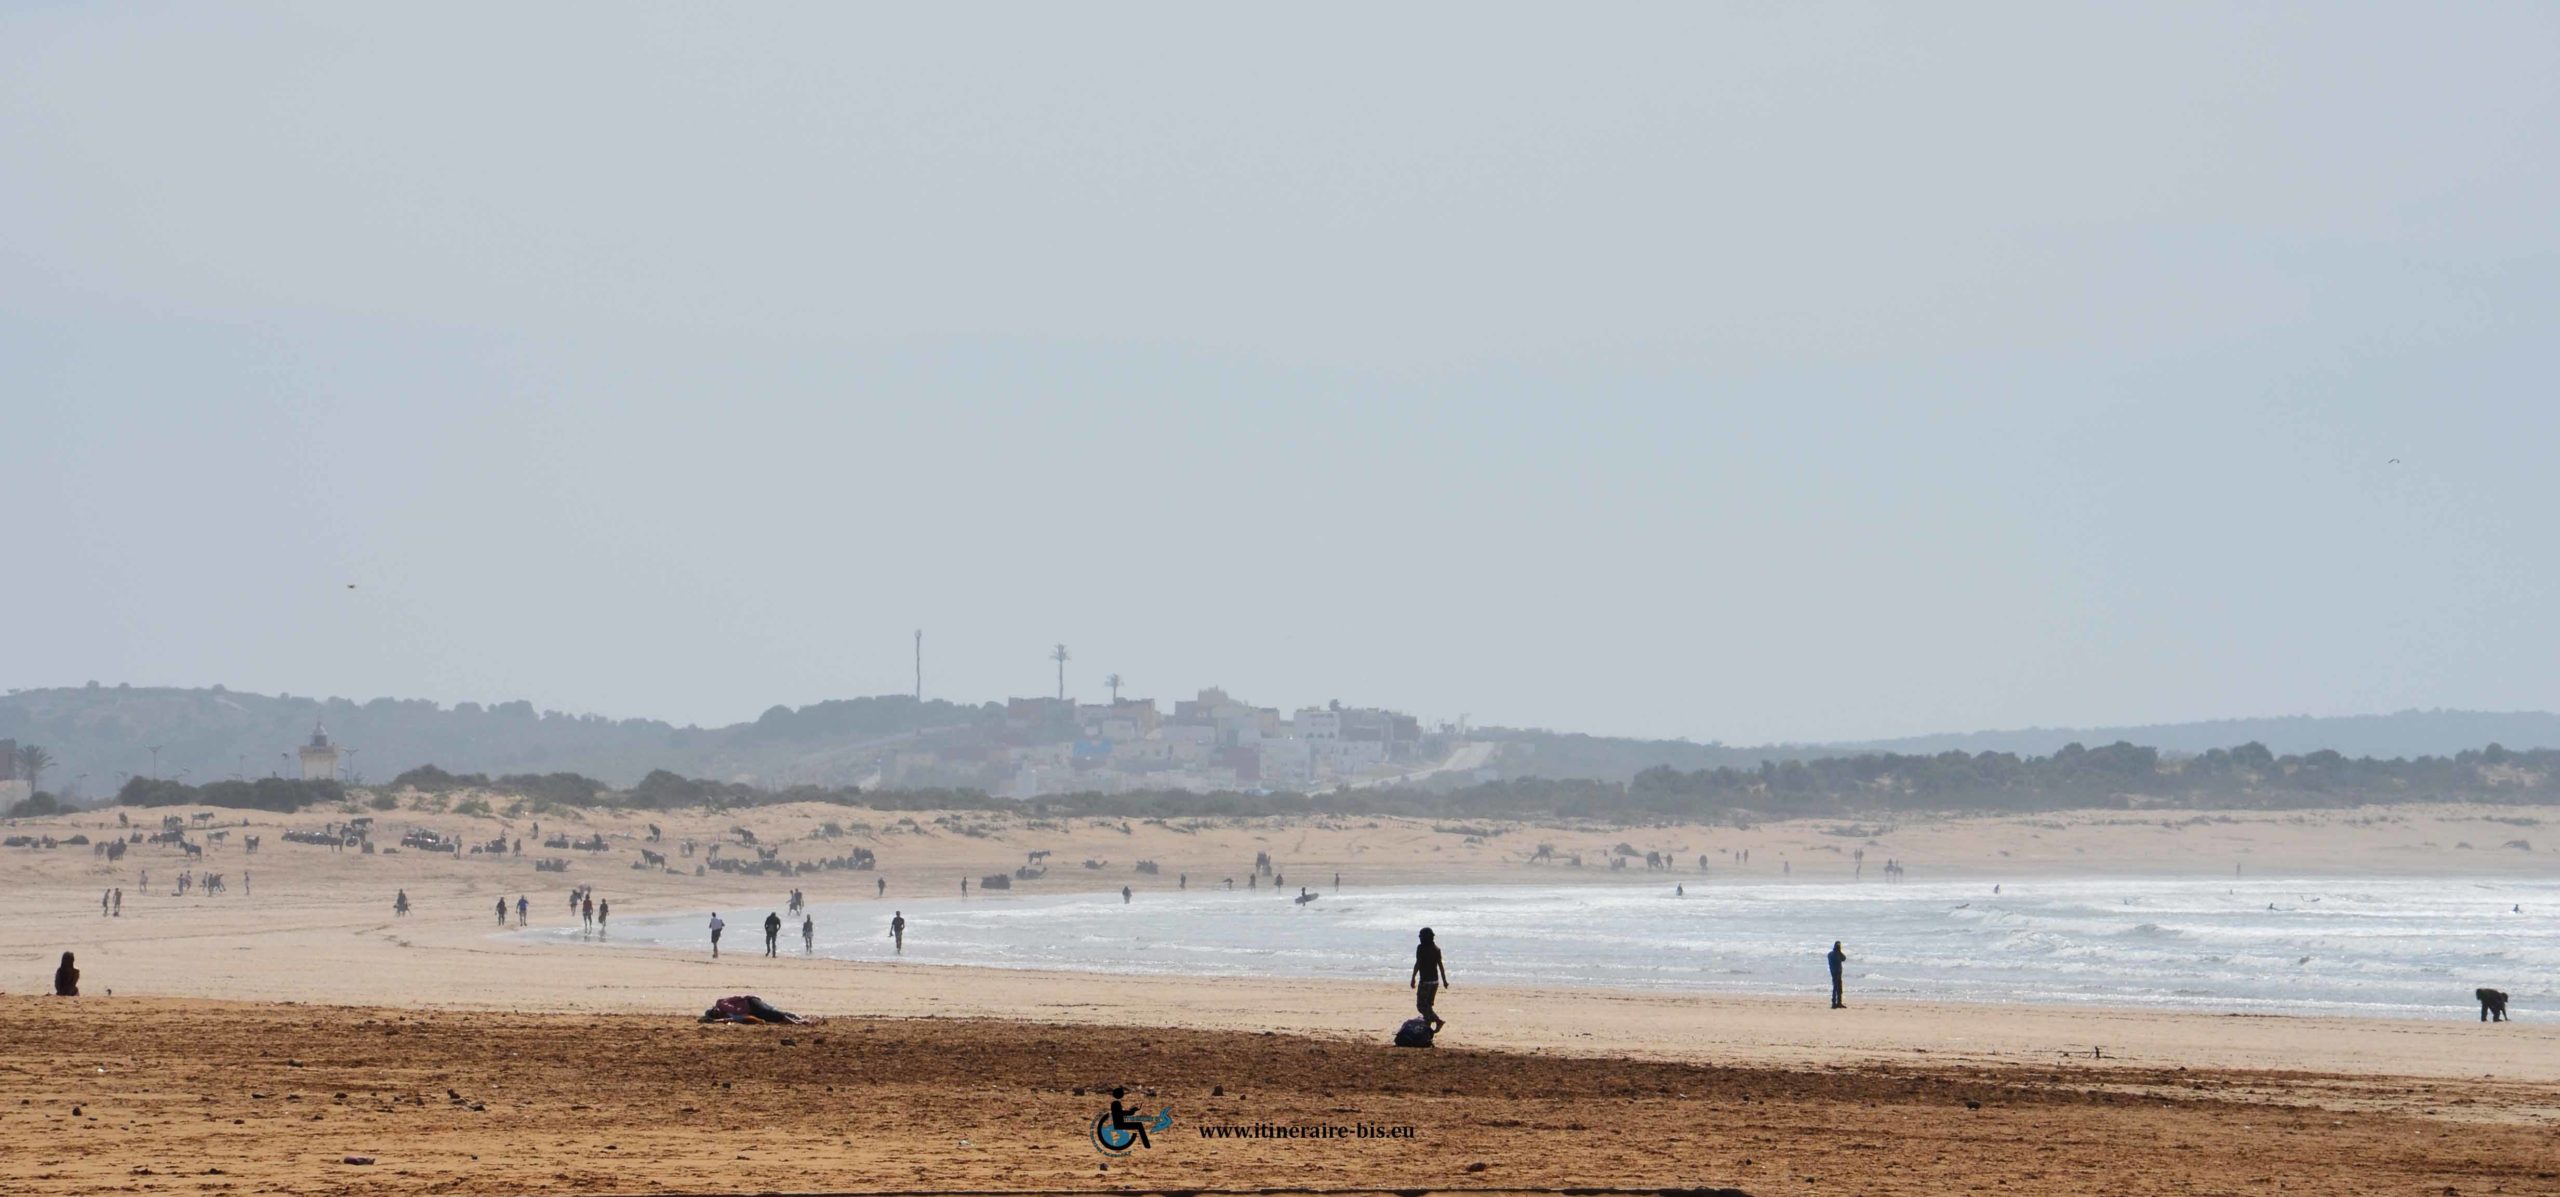 La plage s'étend d'Essaouira à Agadir sur de grandes étendus de sable comme sur la photographie.